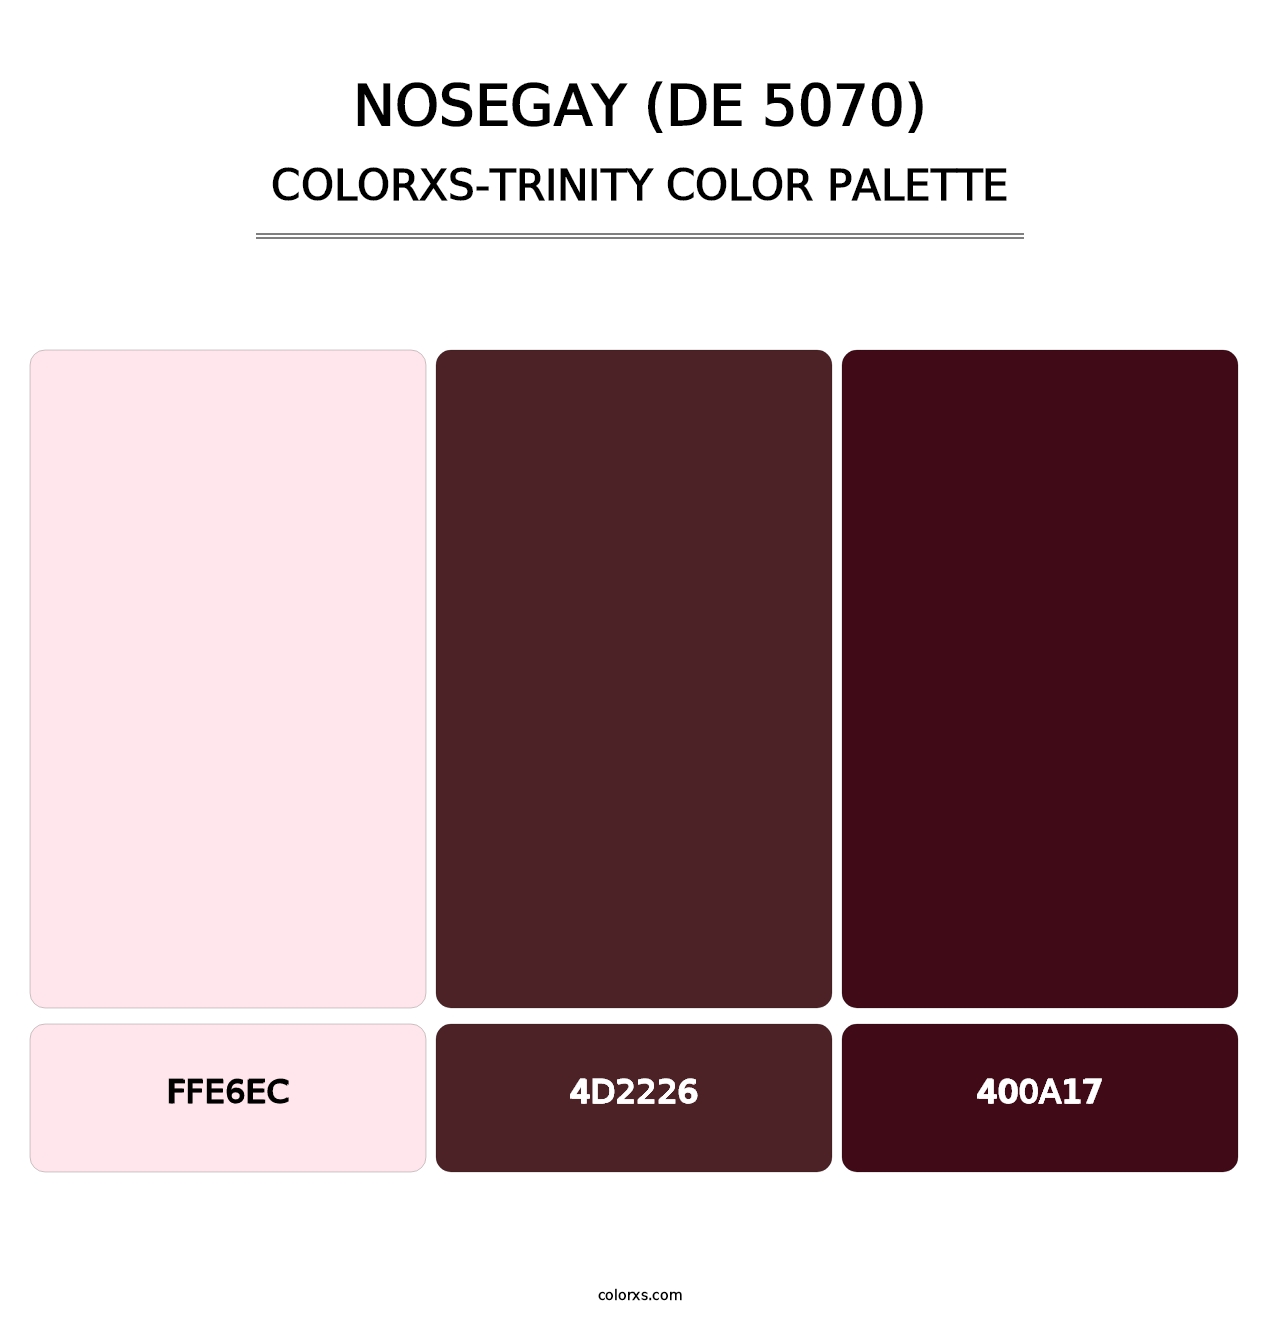 Nosegay (DE 5070) - Colorxs Trinity Palette